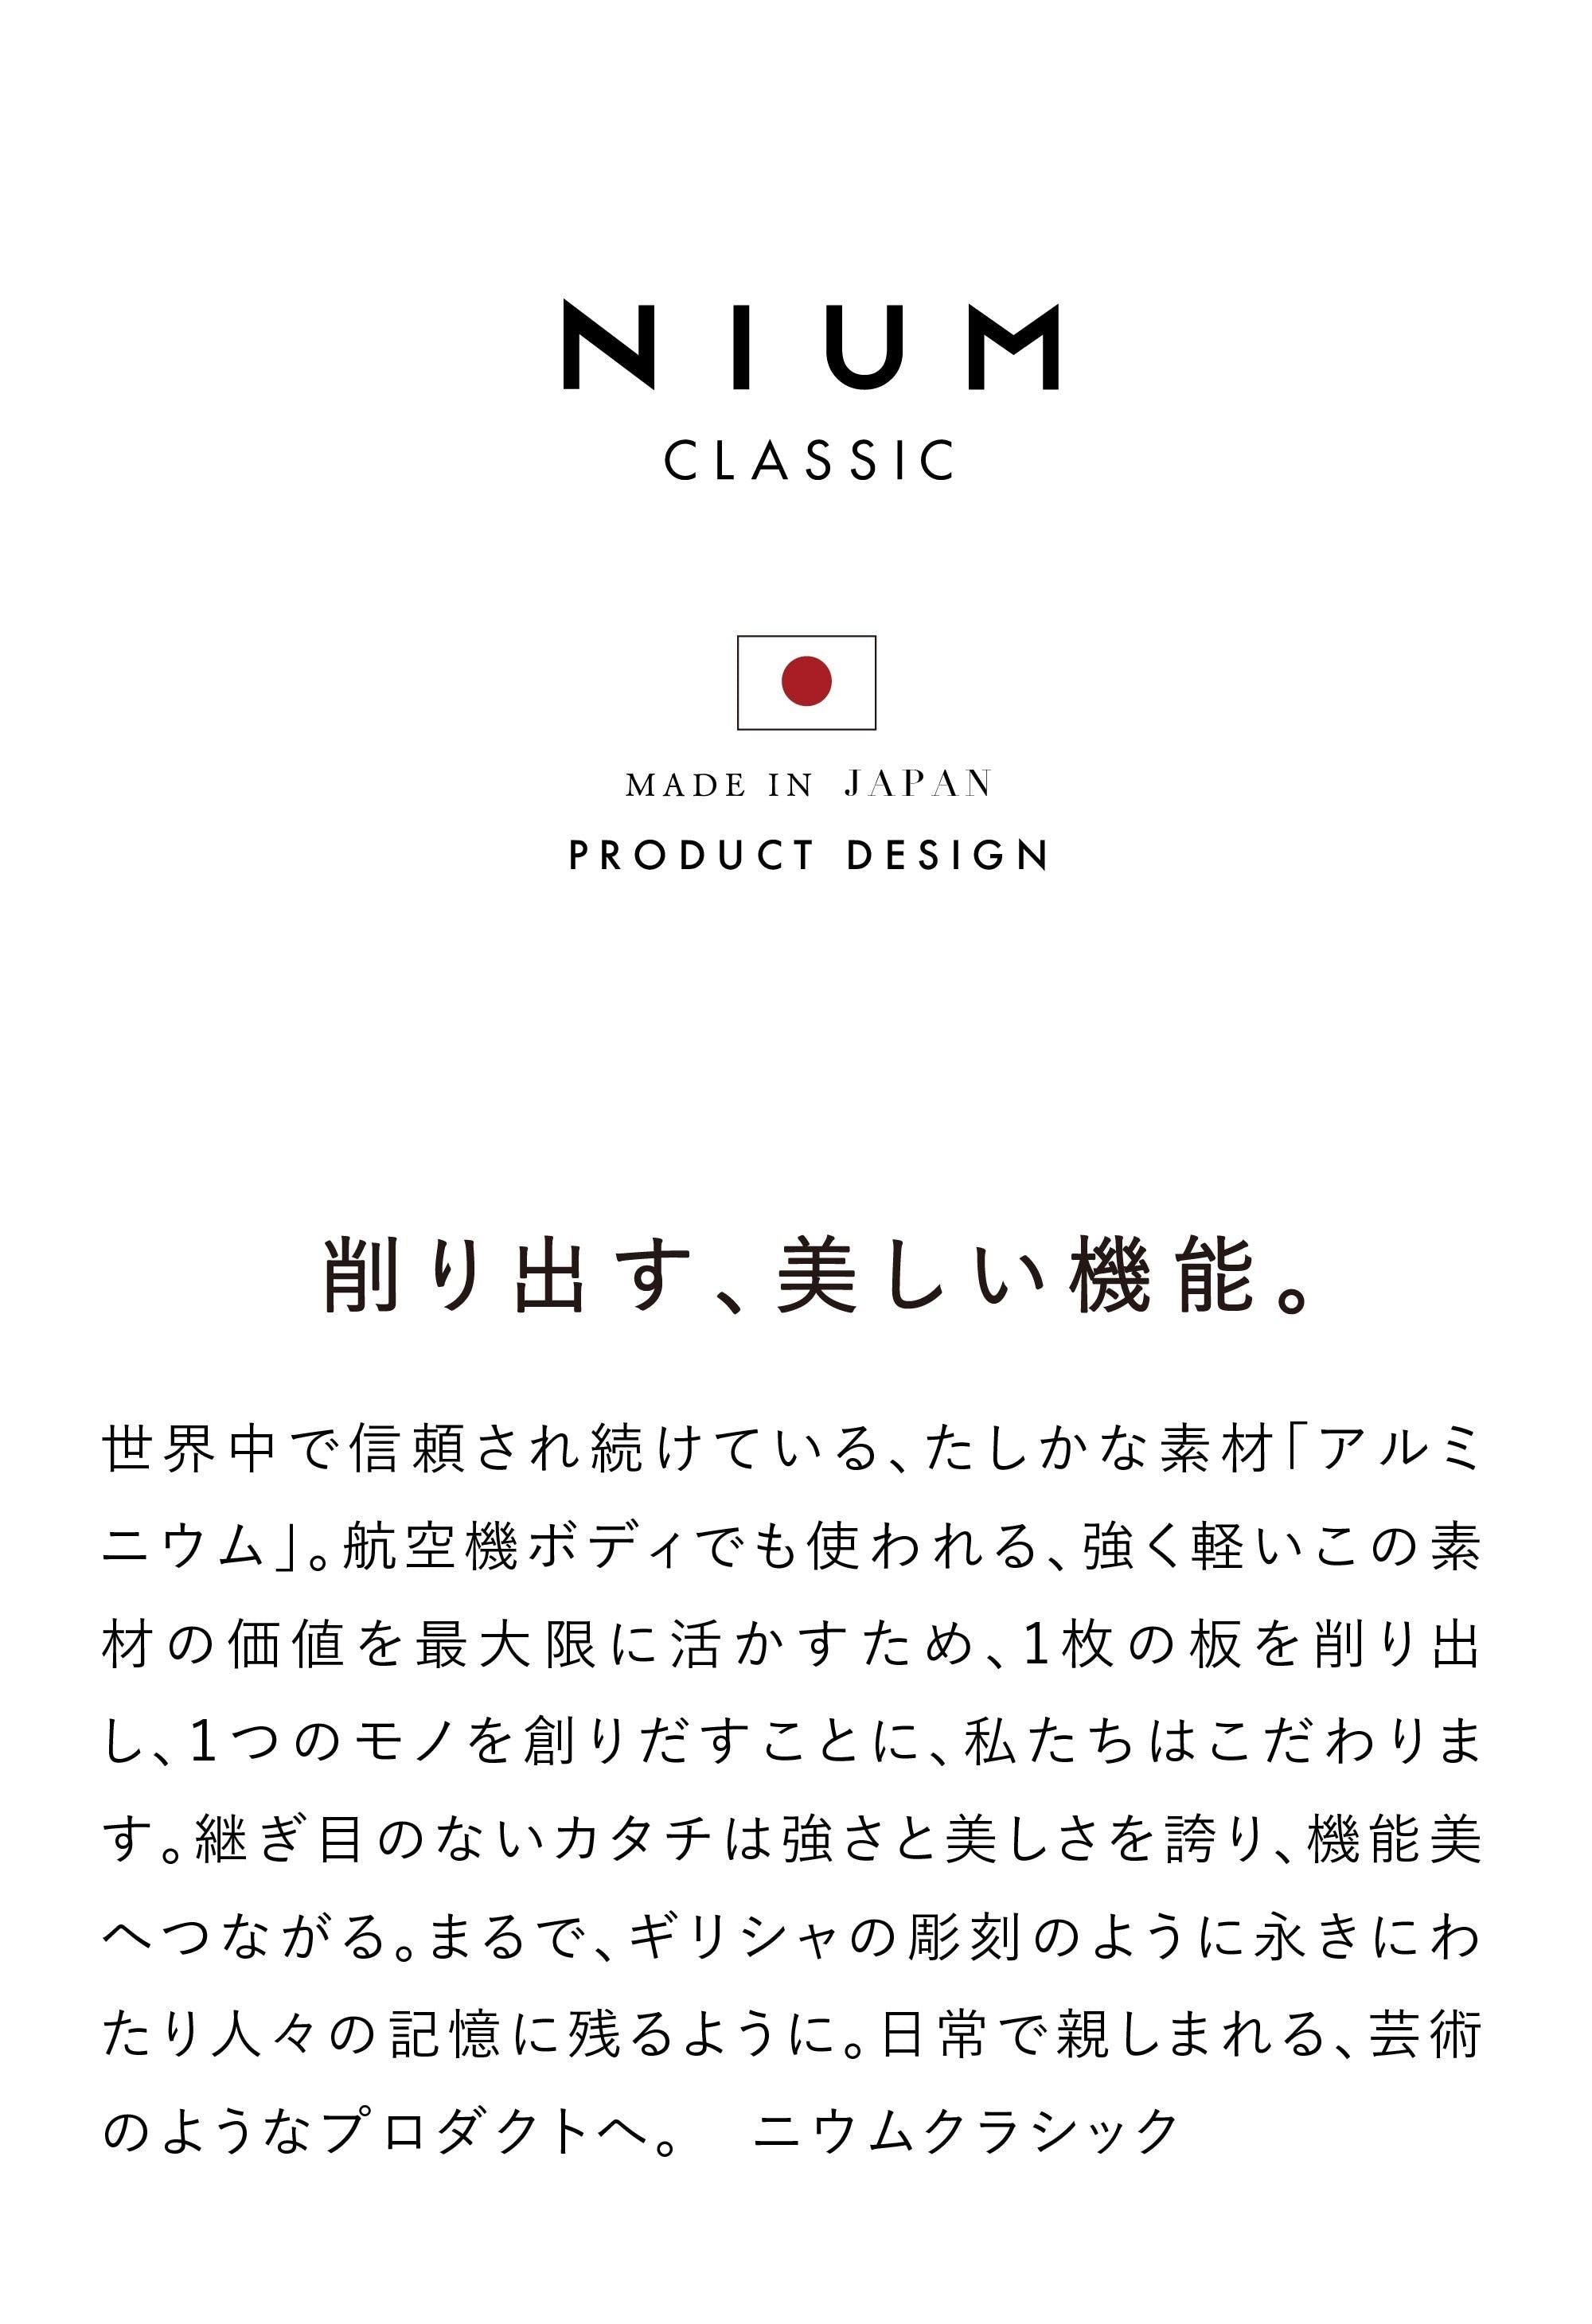 NIUM CLASSIC ニウムクラシック 次世代フレーム型 日本製 アルミ削り出し マネークリップ カードケース ジュラルミン ブランド説明